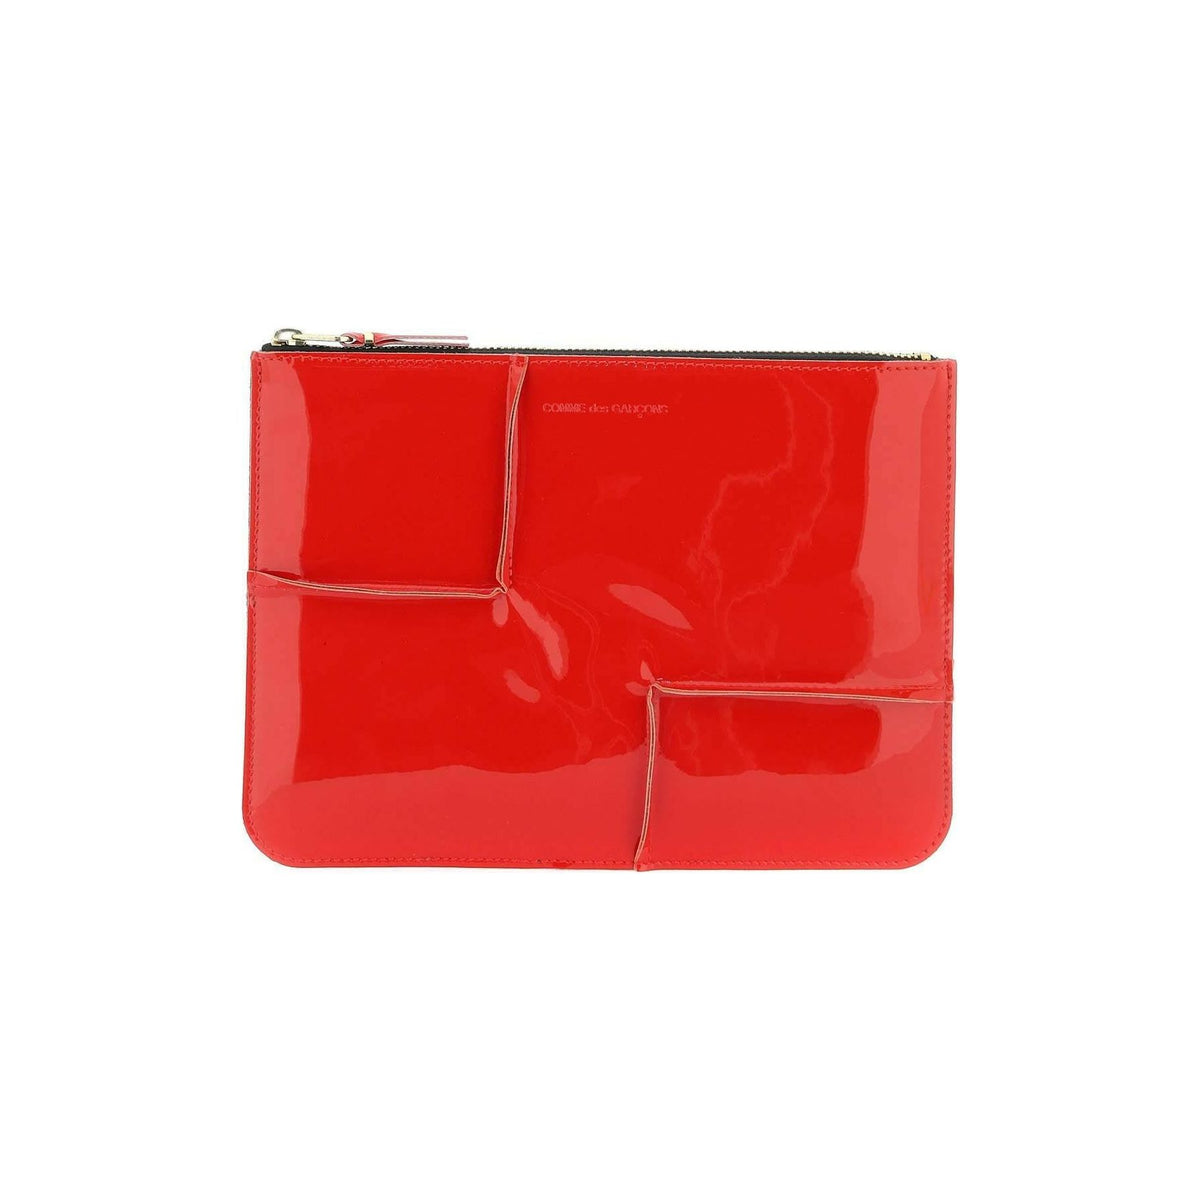 COMME DES GARCONS WALLET - Comme des Garçons Red Glossy Patent Leather Pouch - JOHN JULIA